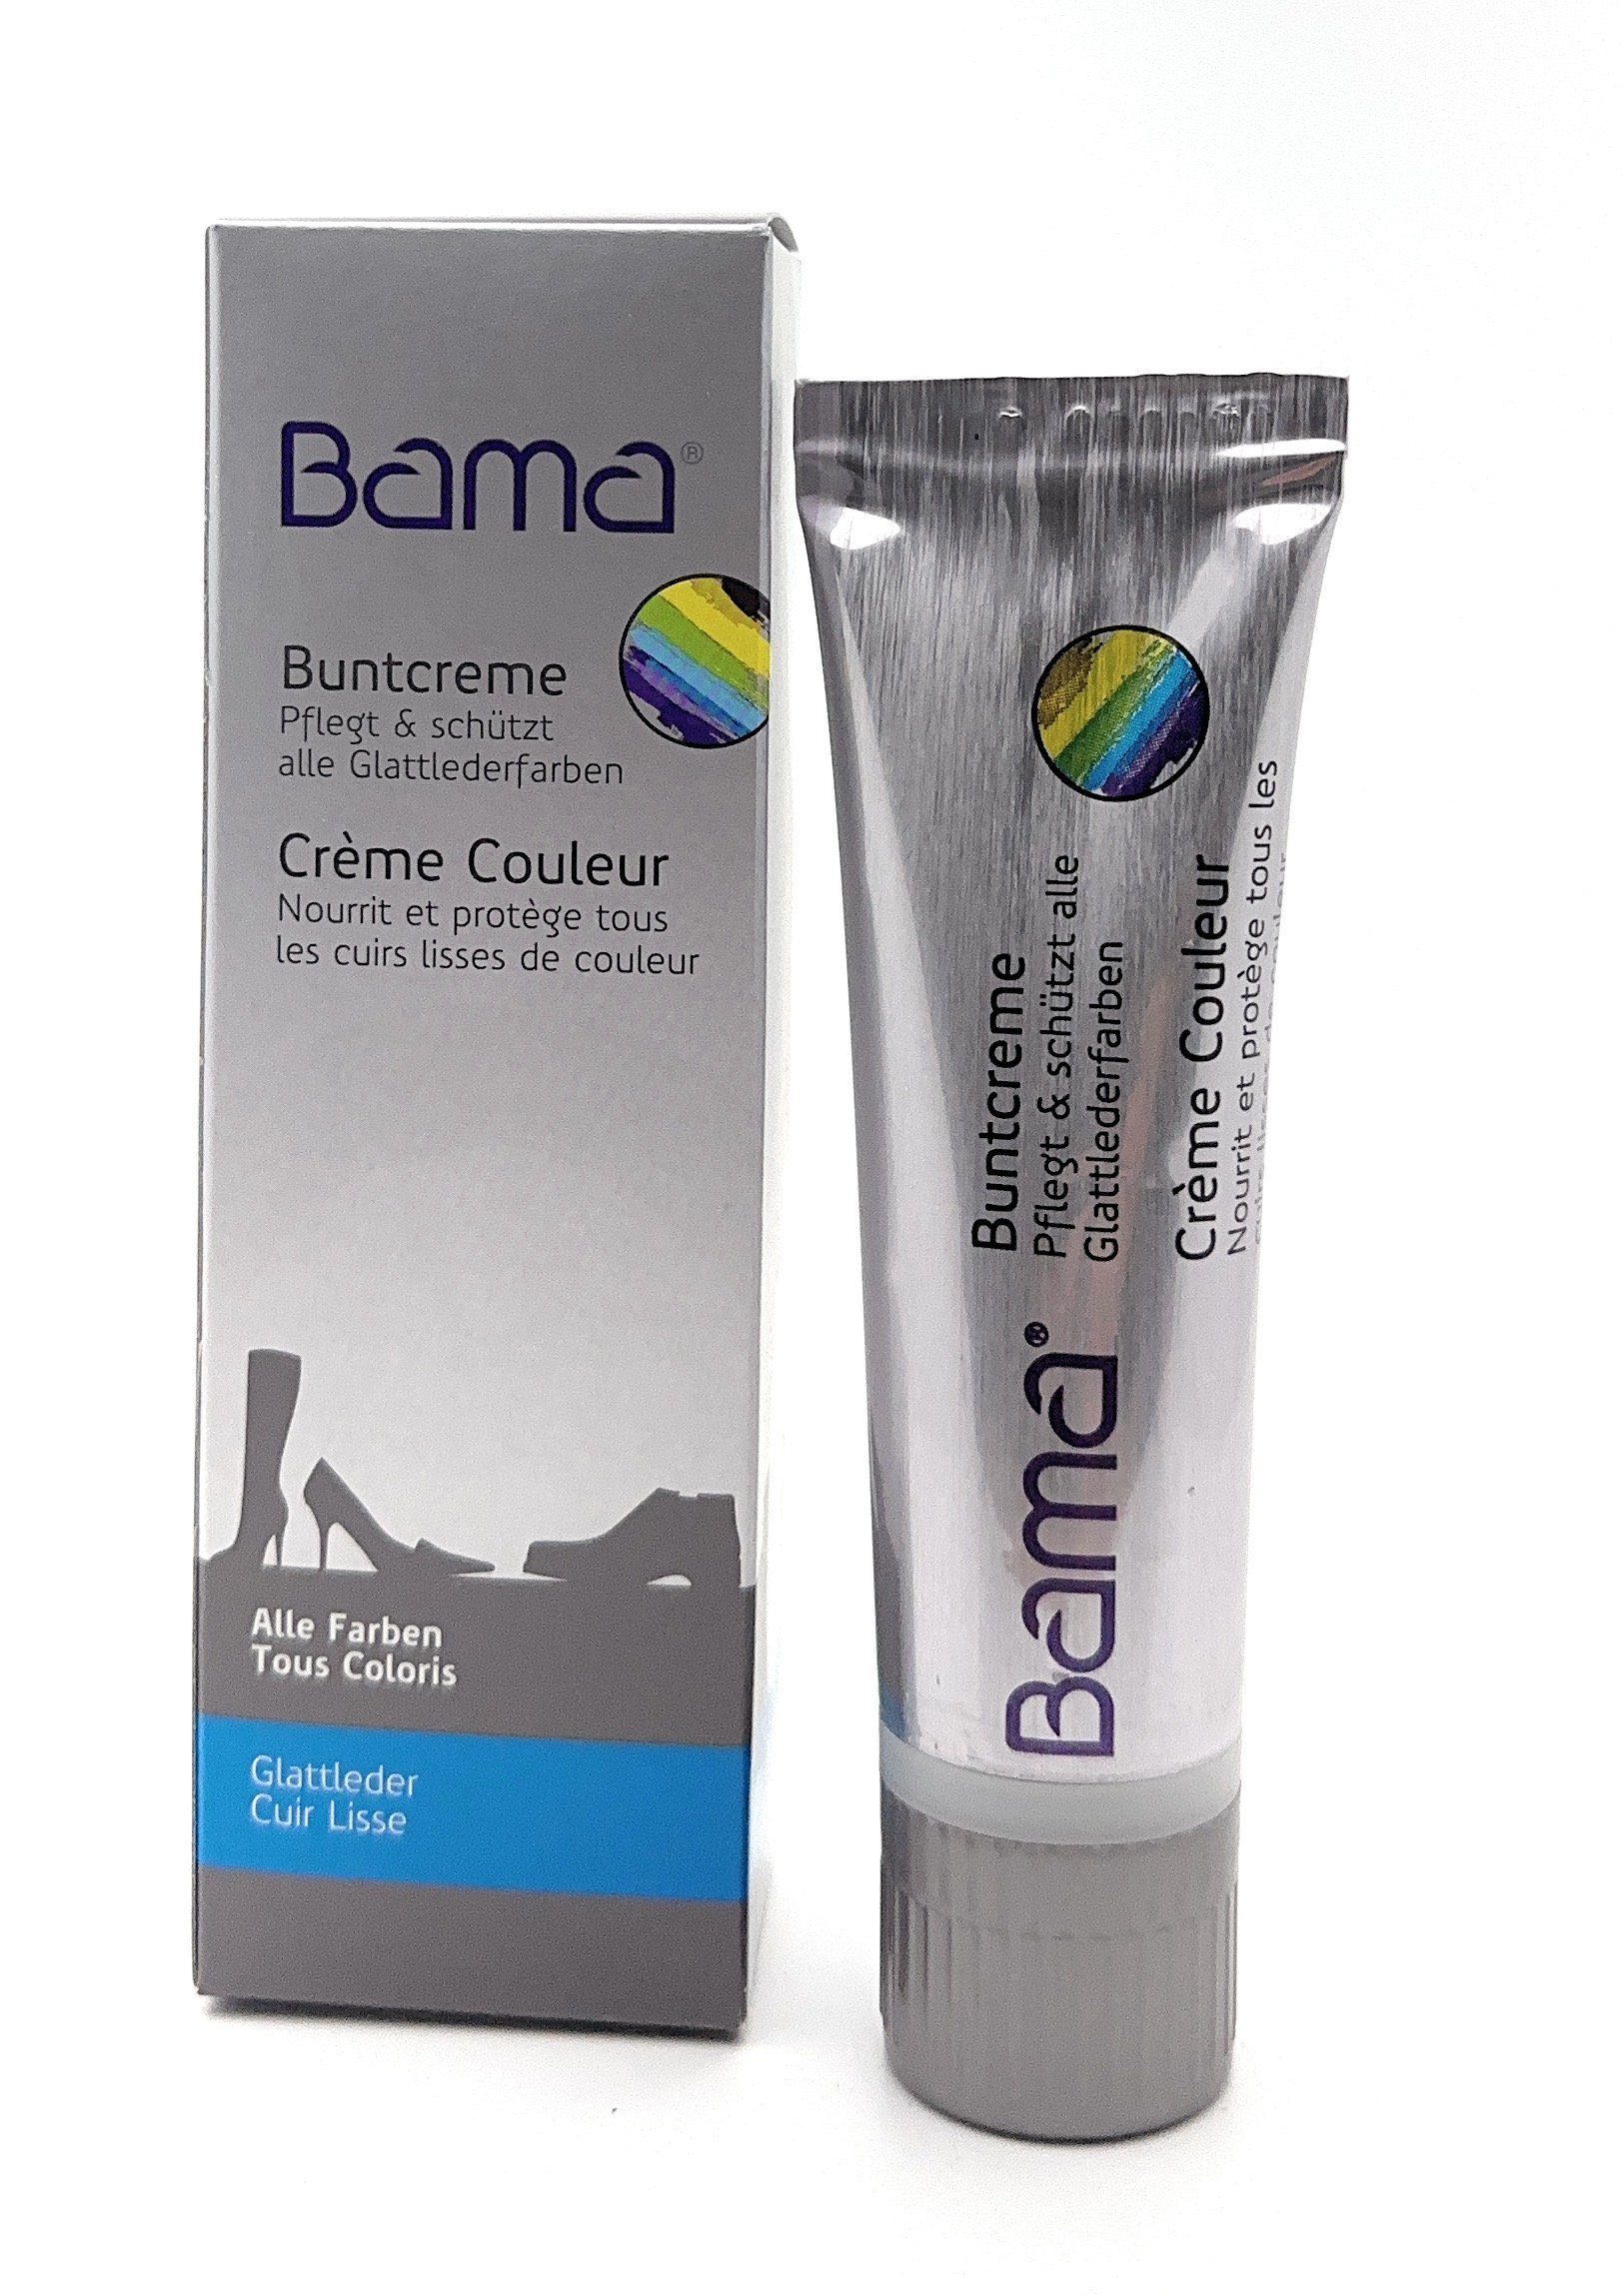 BAMA Group Bama Buntcreme, farblose Pflege für Glattleder und mehr, 50 ml Schuhcreme | Schuhpflegemittel